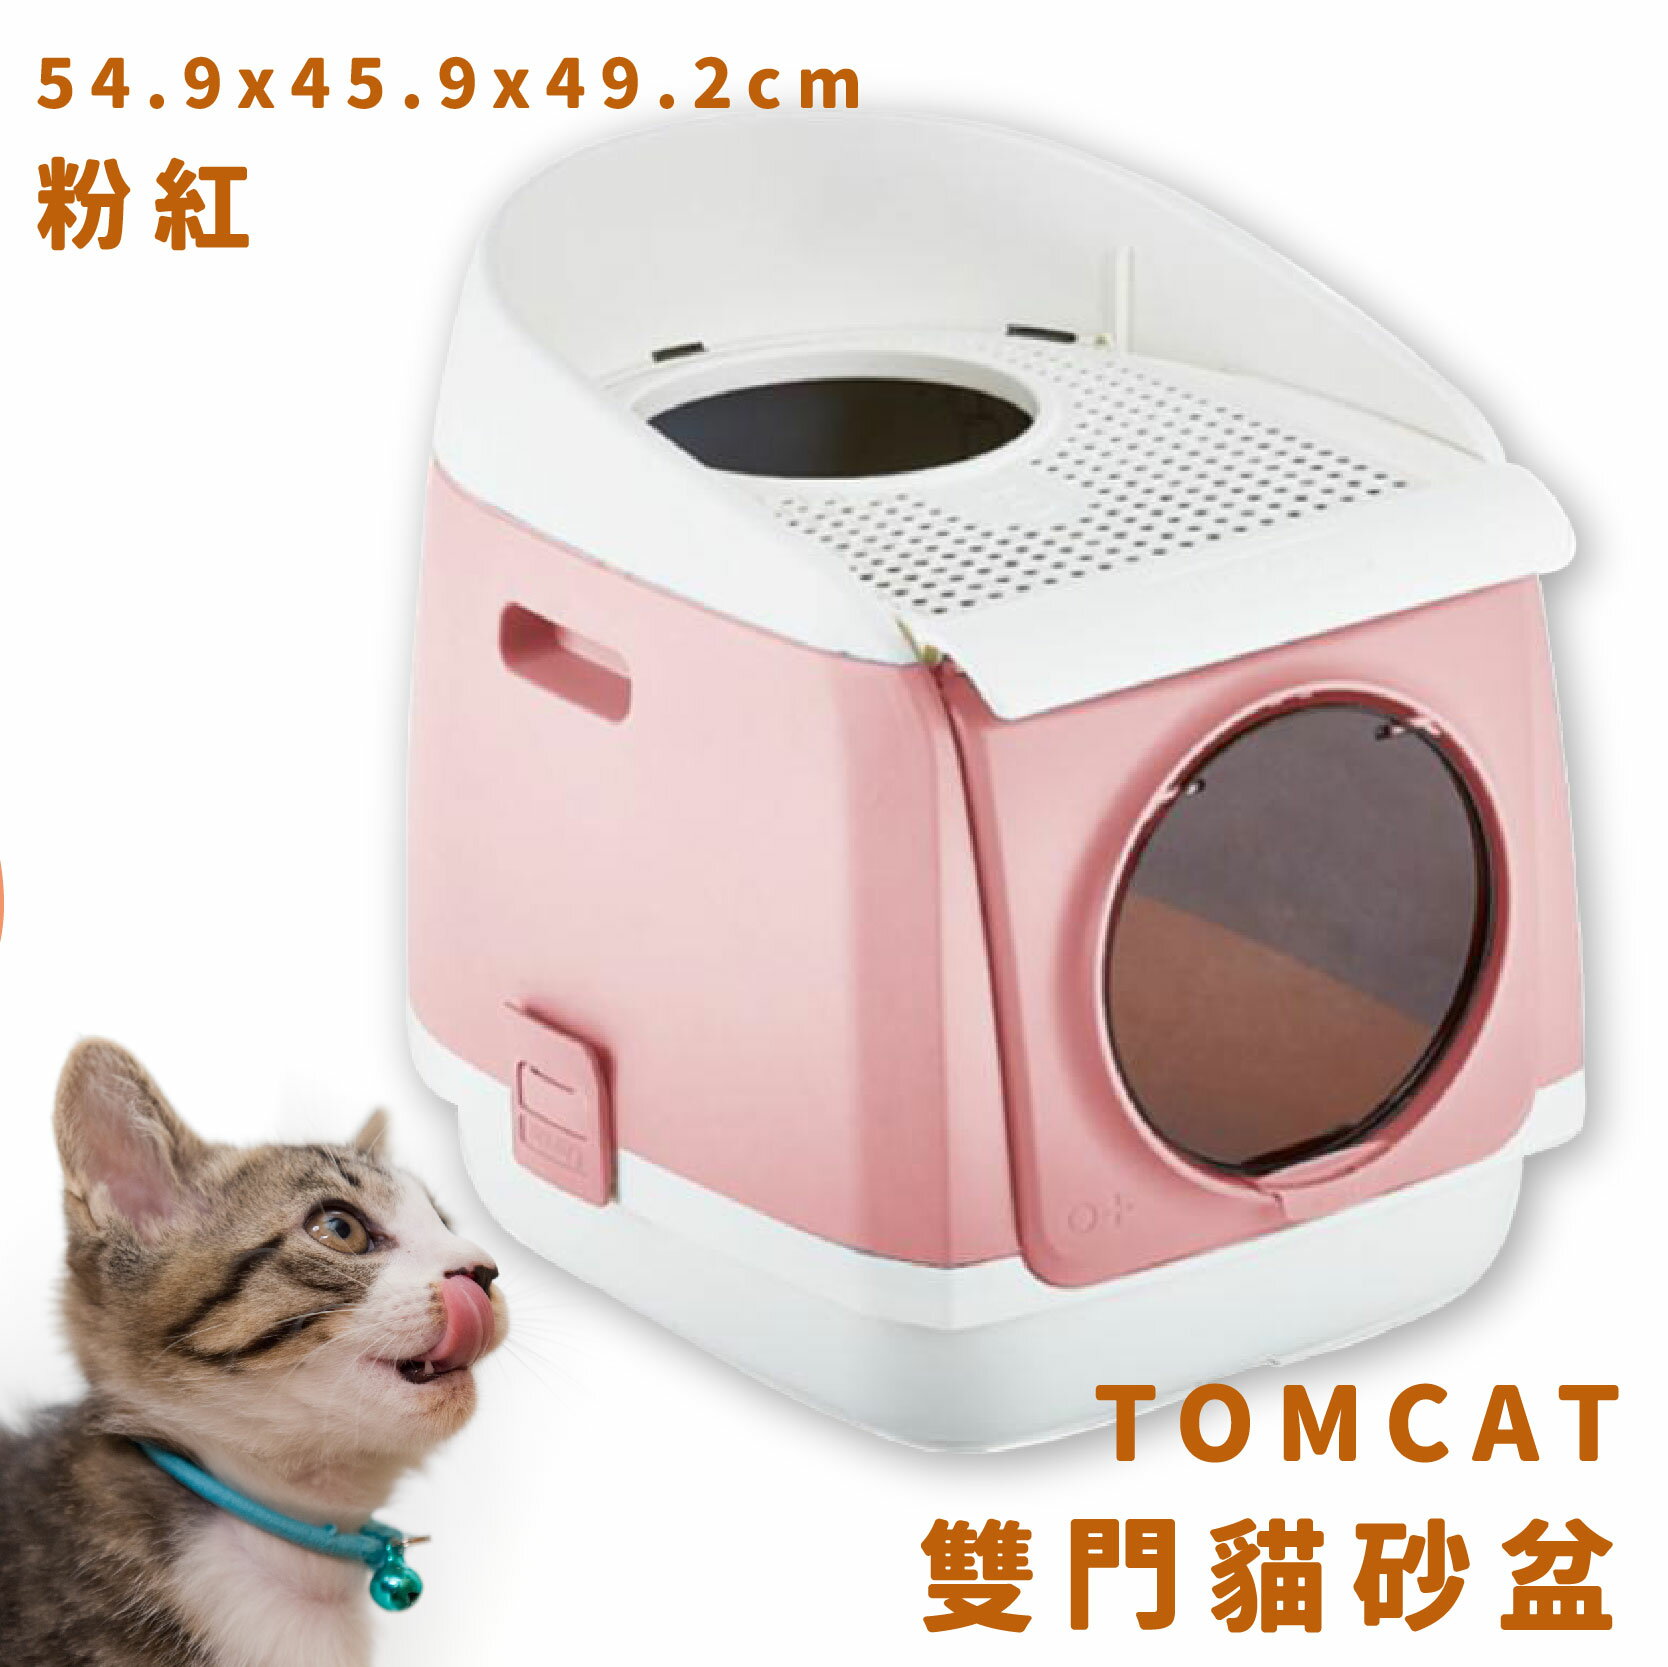 【現貨供應】TOMCAT 雙門貓砂盆 粉紅 雙門設計 落沙踏板 活性碳片 貓廁所 貓用品 寵物用品 寵物精品 限時促銷